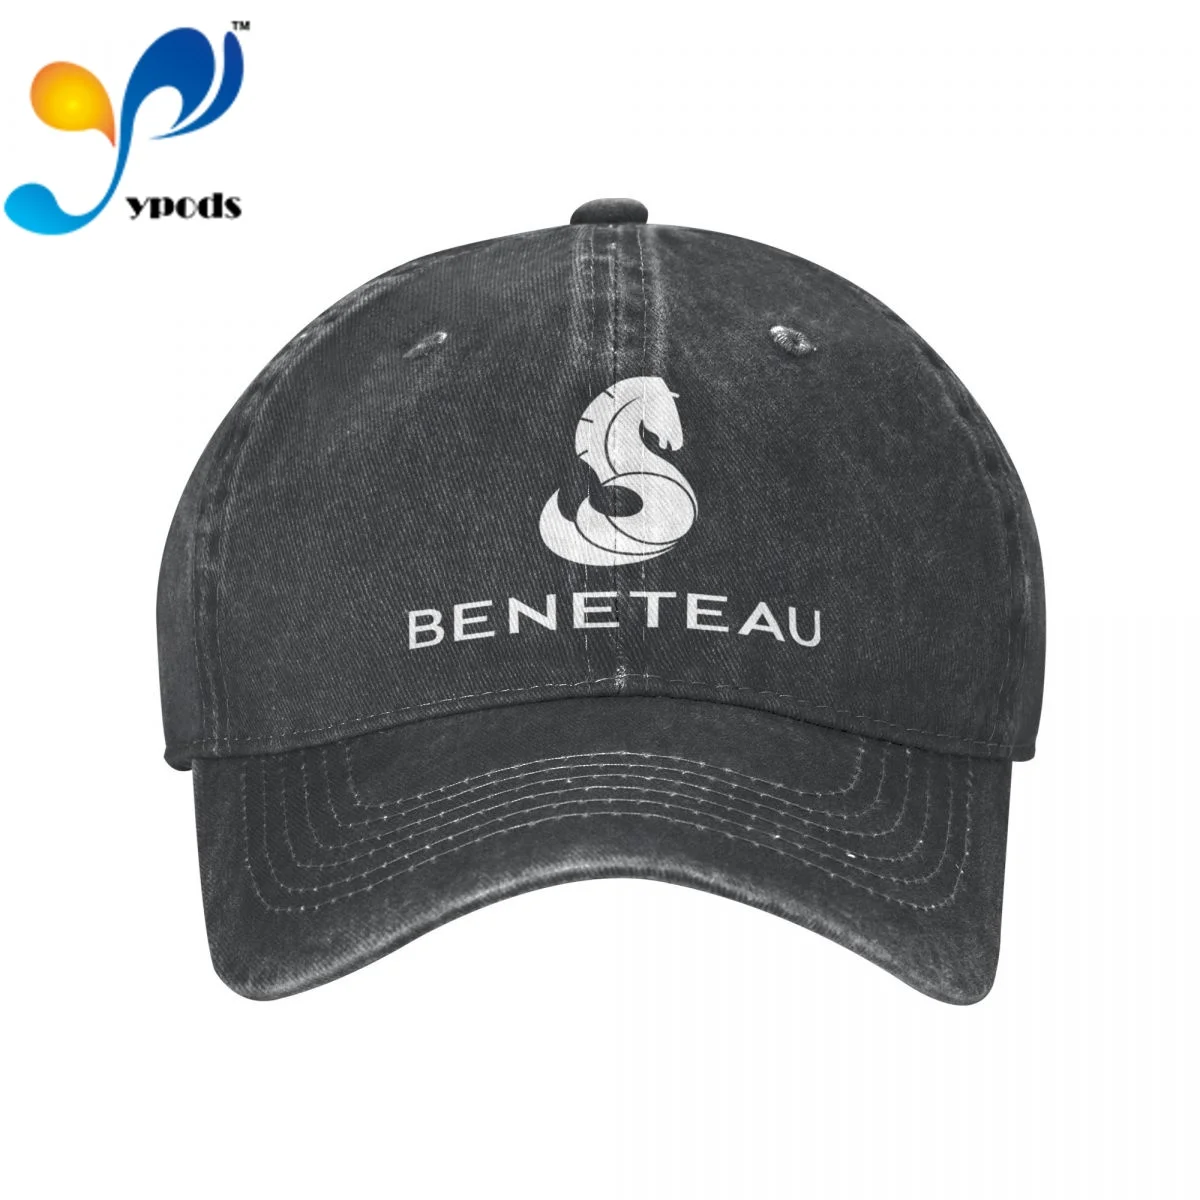 

Beneteau Aftermarket Cotton Cap For Men Women Gorras Snapback Caps Baseball Caps Casquette Dad Hat